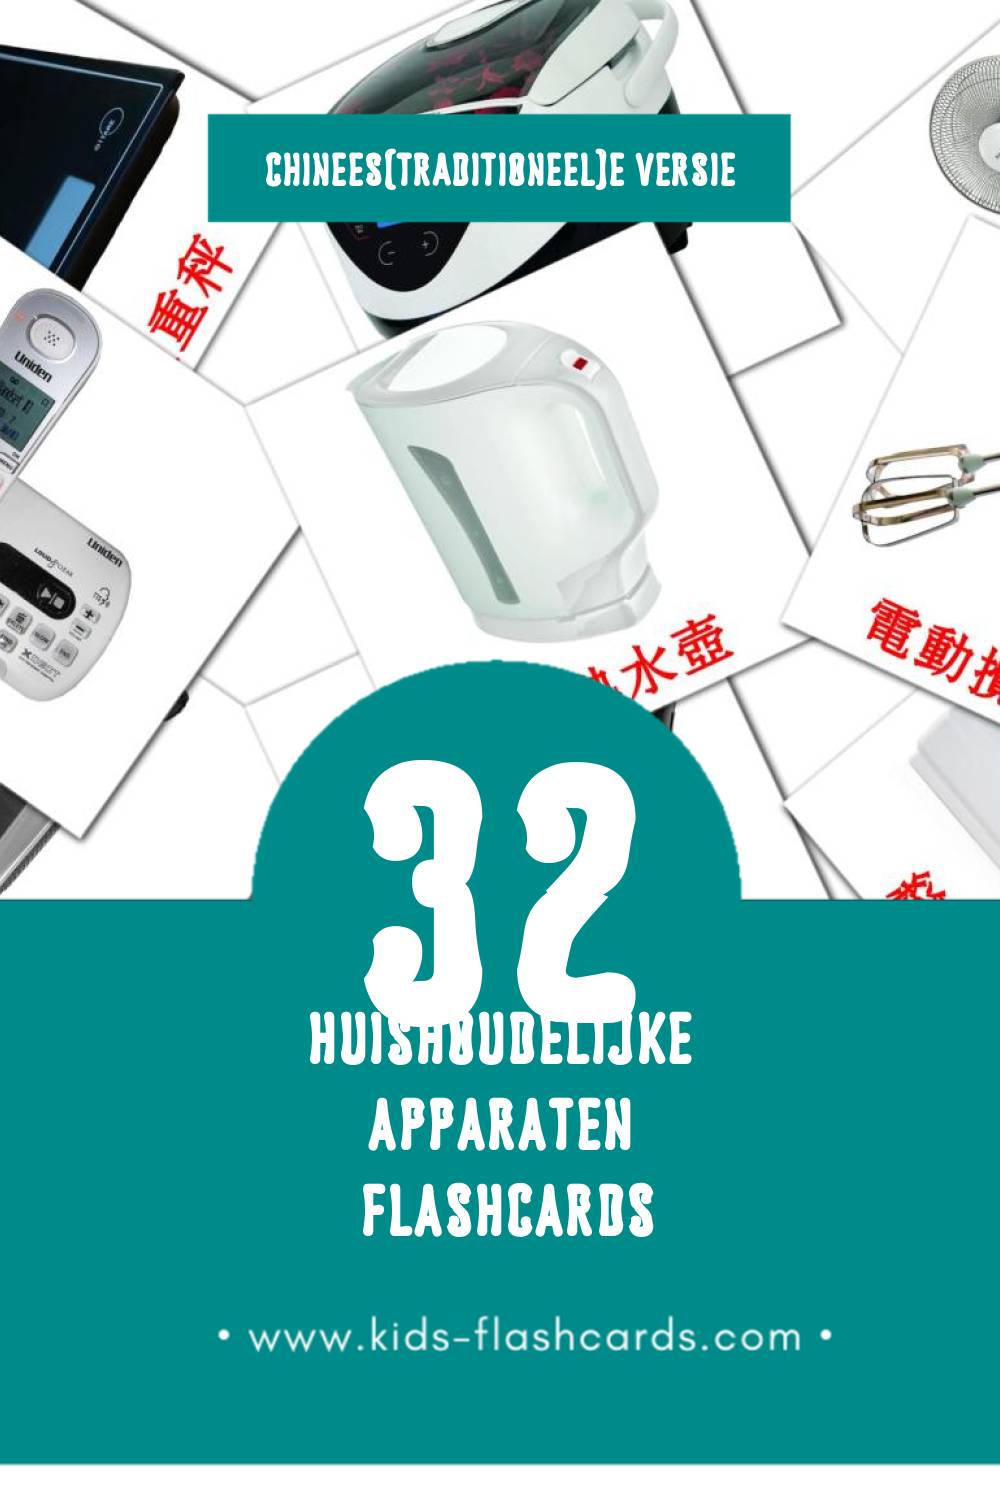 Visuele 家用電器 Flashcards voor Kleuters (32 kaarten in het Chinees(traditioneel))